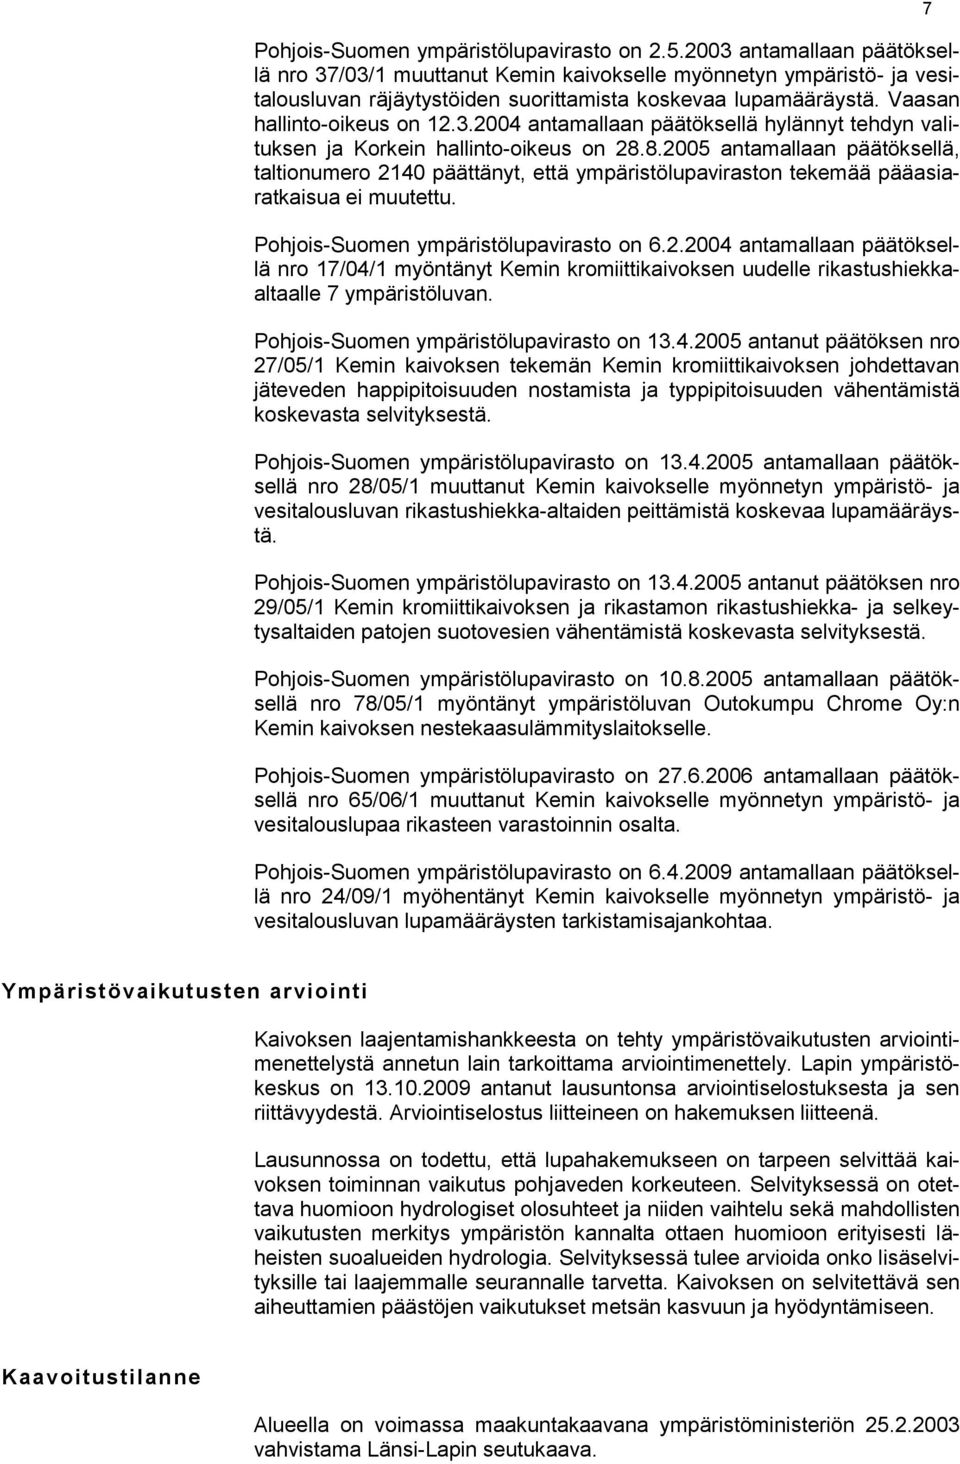 8.2005 antamallaan päätöksellä, taltionumero 2140 päättänyt, että ympäristölupaviraston tekemää pääasiaratkaisua ei muutettu. Pohjois-Suomen ympäristölupavirasto on 6.2.2004 antamallaan päätöksellä nro 17/04/1 myöntänyt Kemin kromiittikaivoksen uudelle rikastushiekkaaltaalle 7 ympäristöluvan.